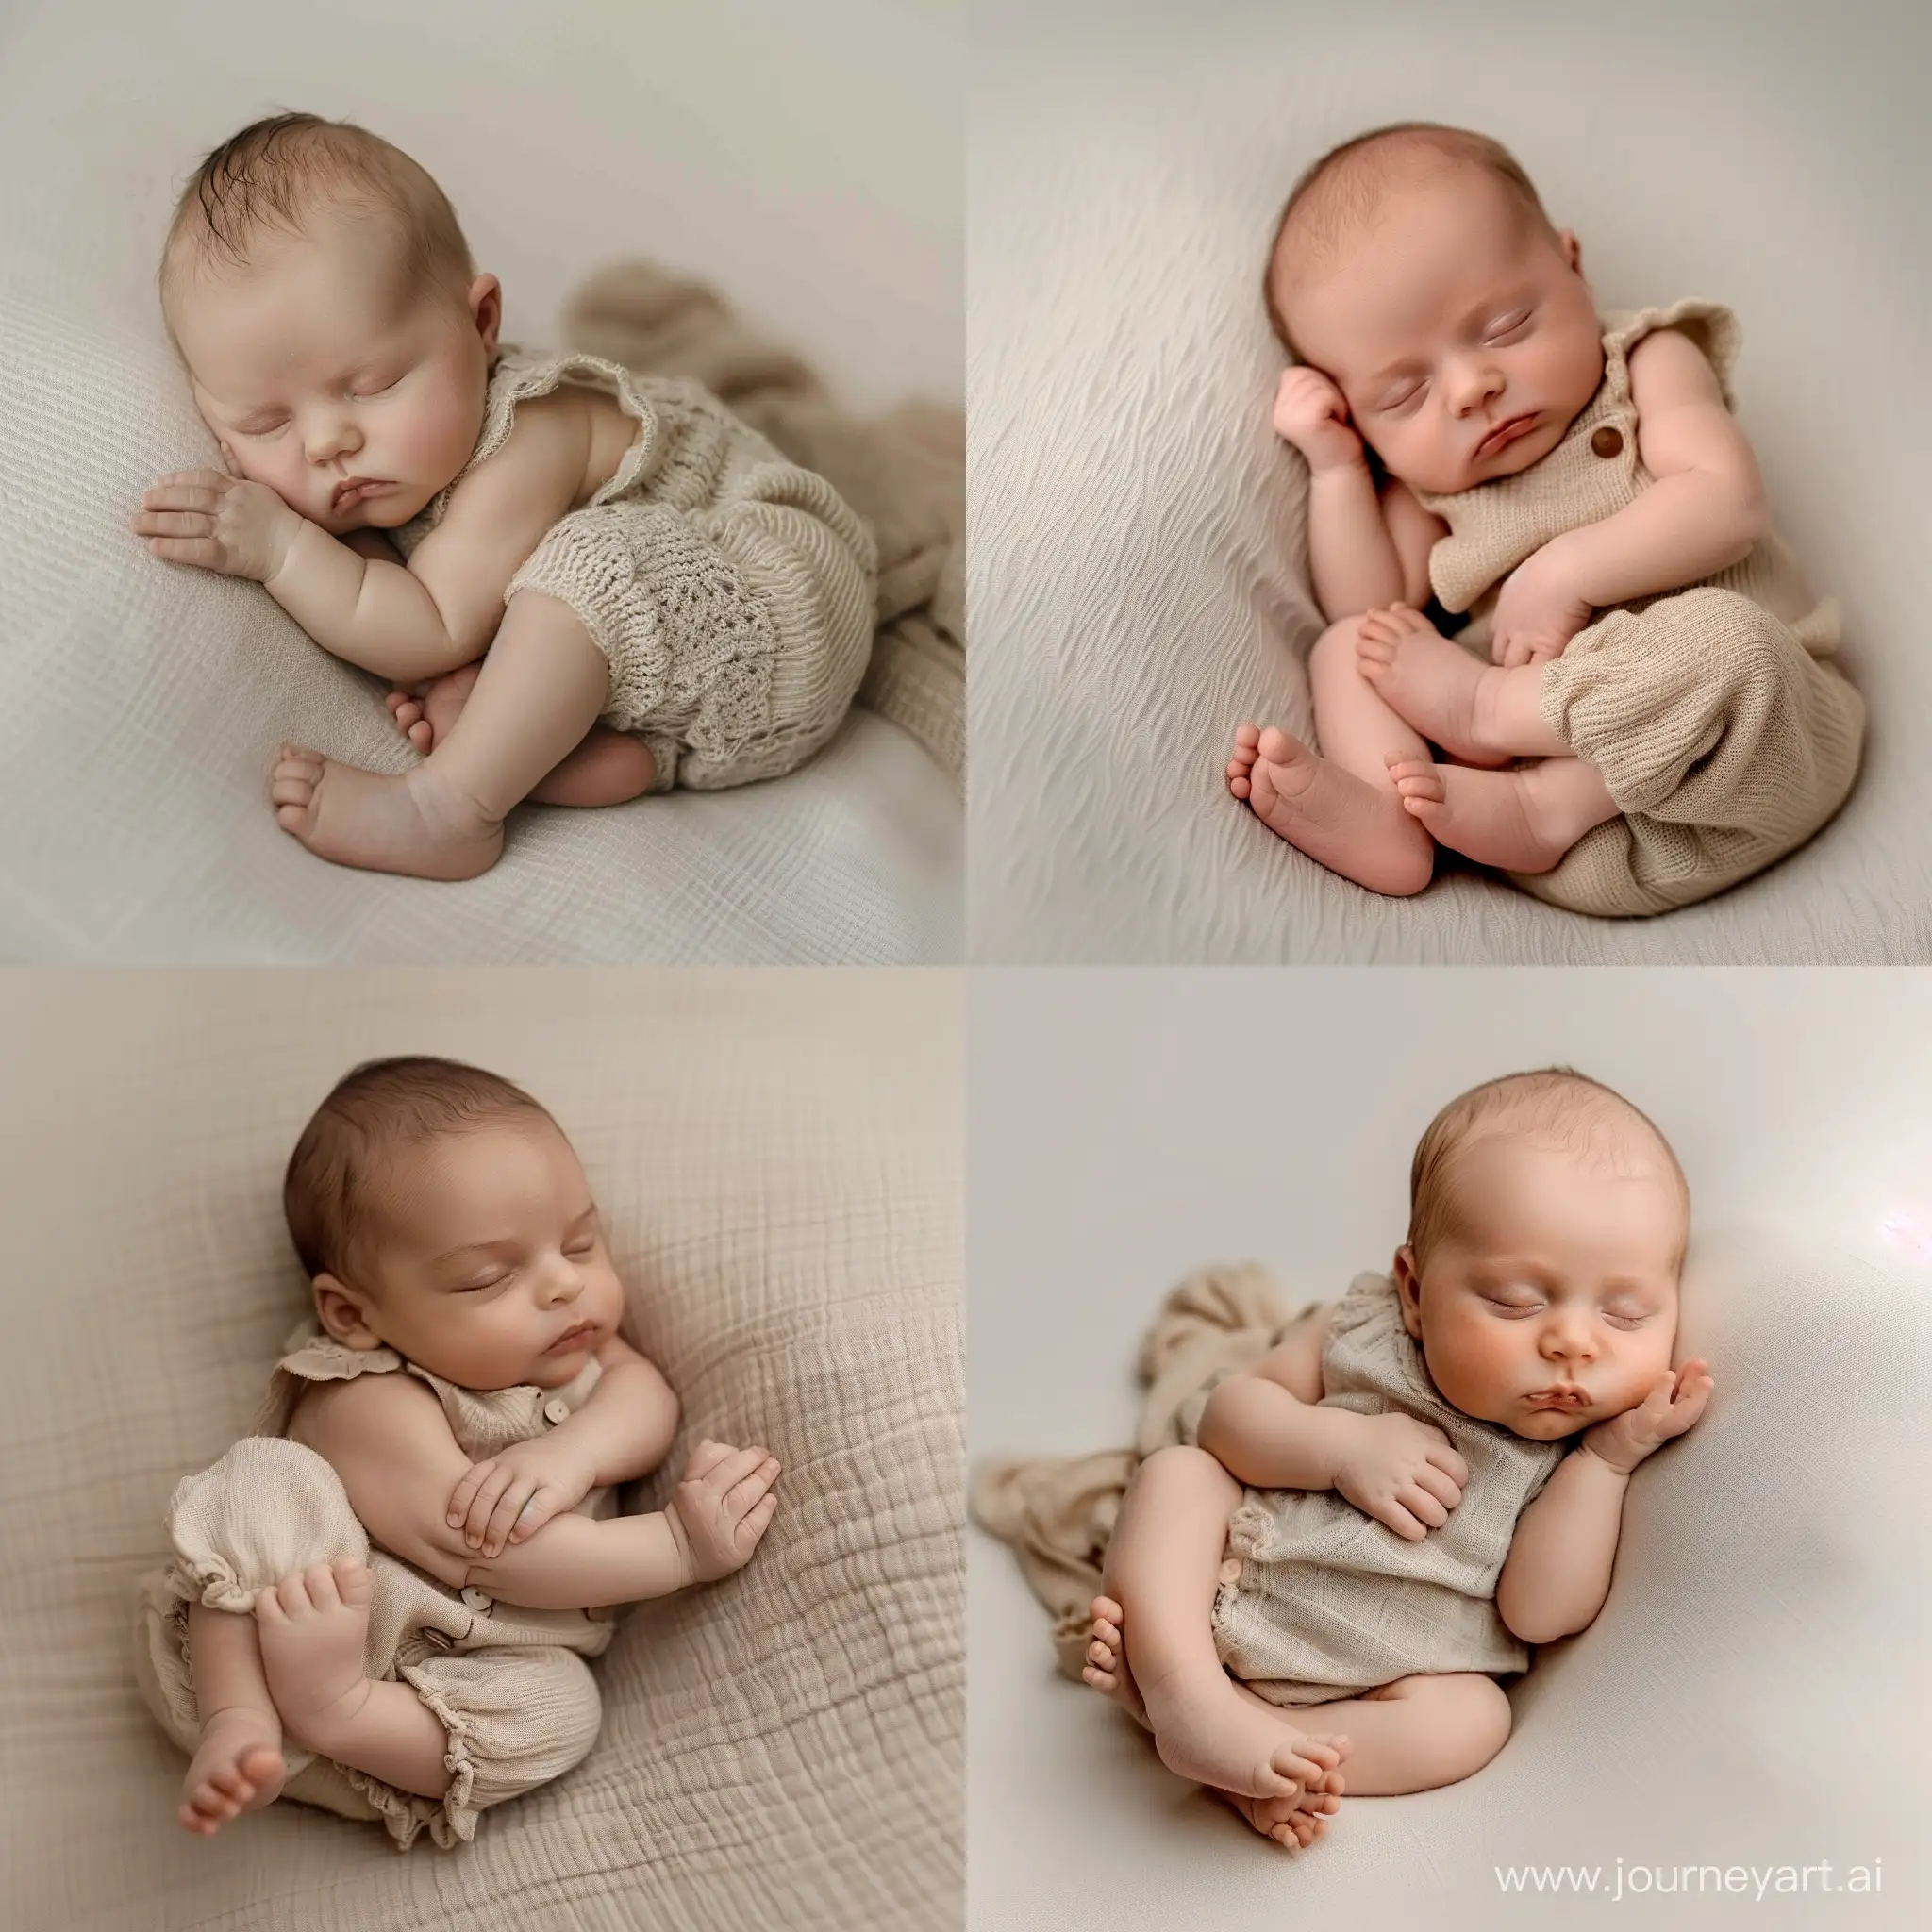 Рекламный креатив для фотографа новорожденных,новорожденный ребенок спит на боку, две руки под щекой, ножки лежат одна на другой, одет в бежевый костюмчик